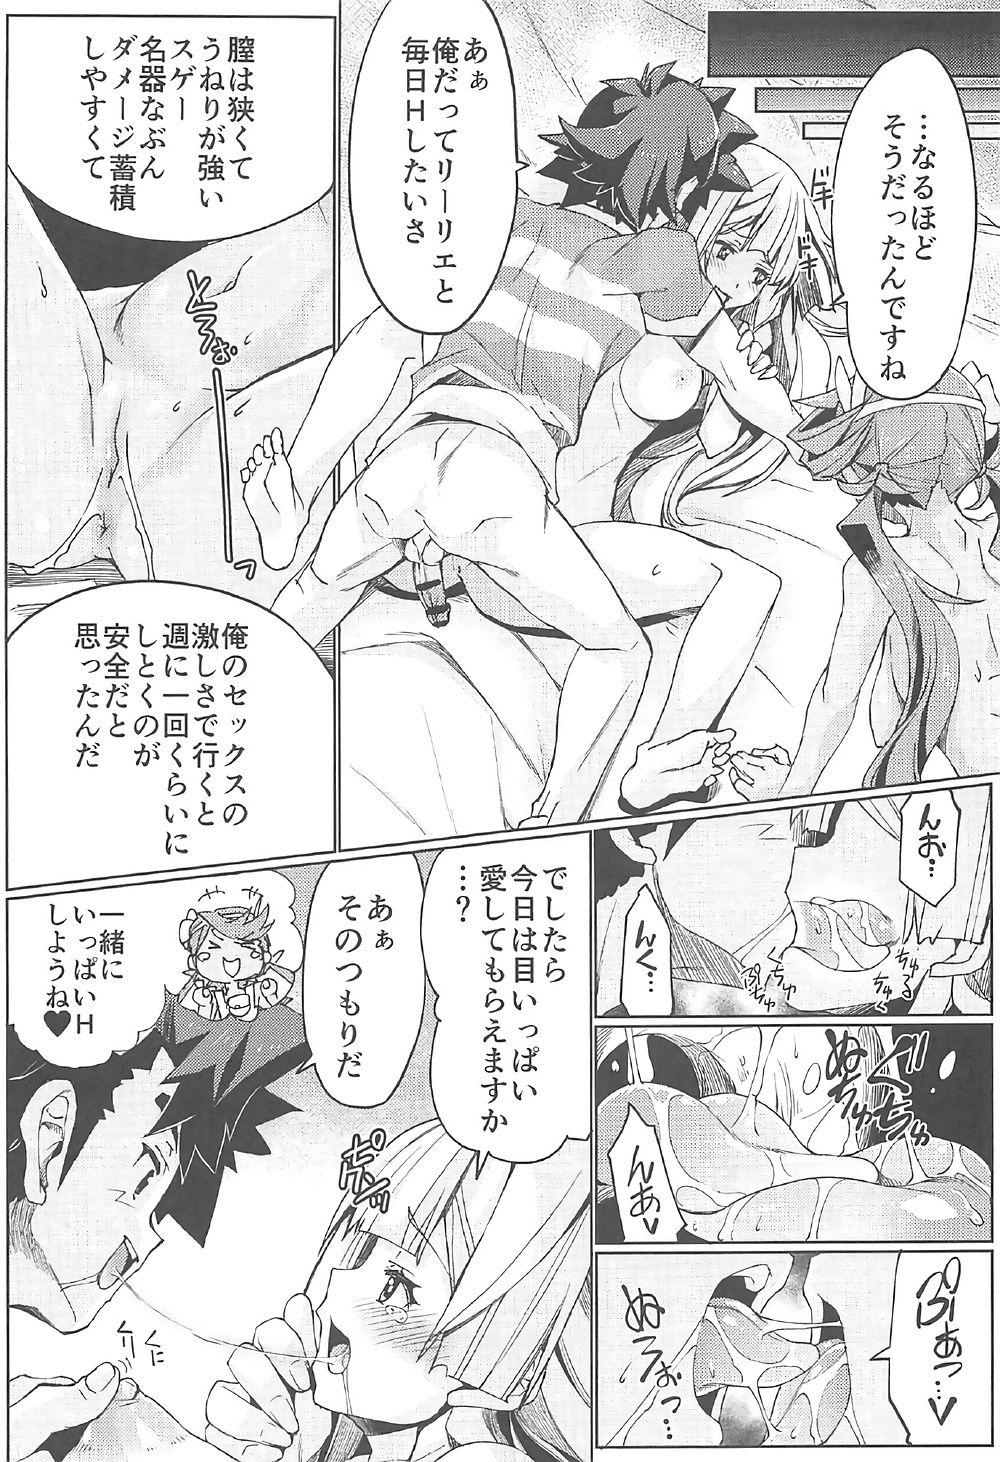 Grande Watashi ga sono Ki ni nareba Ronriteki ni! 2!! - Pokemon Amatuer - Page 10